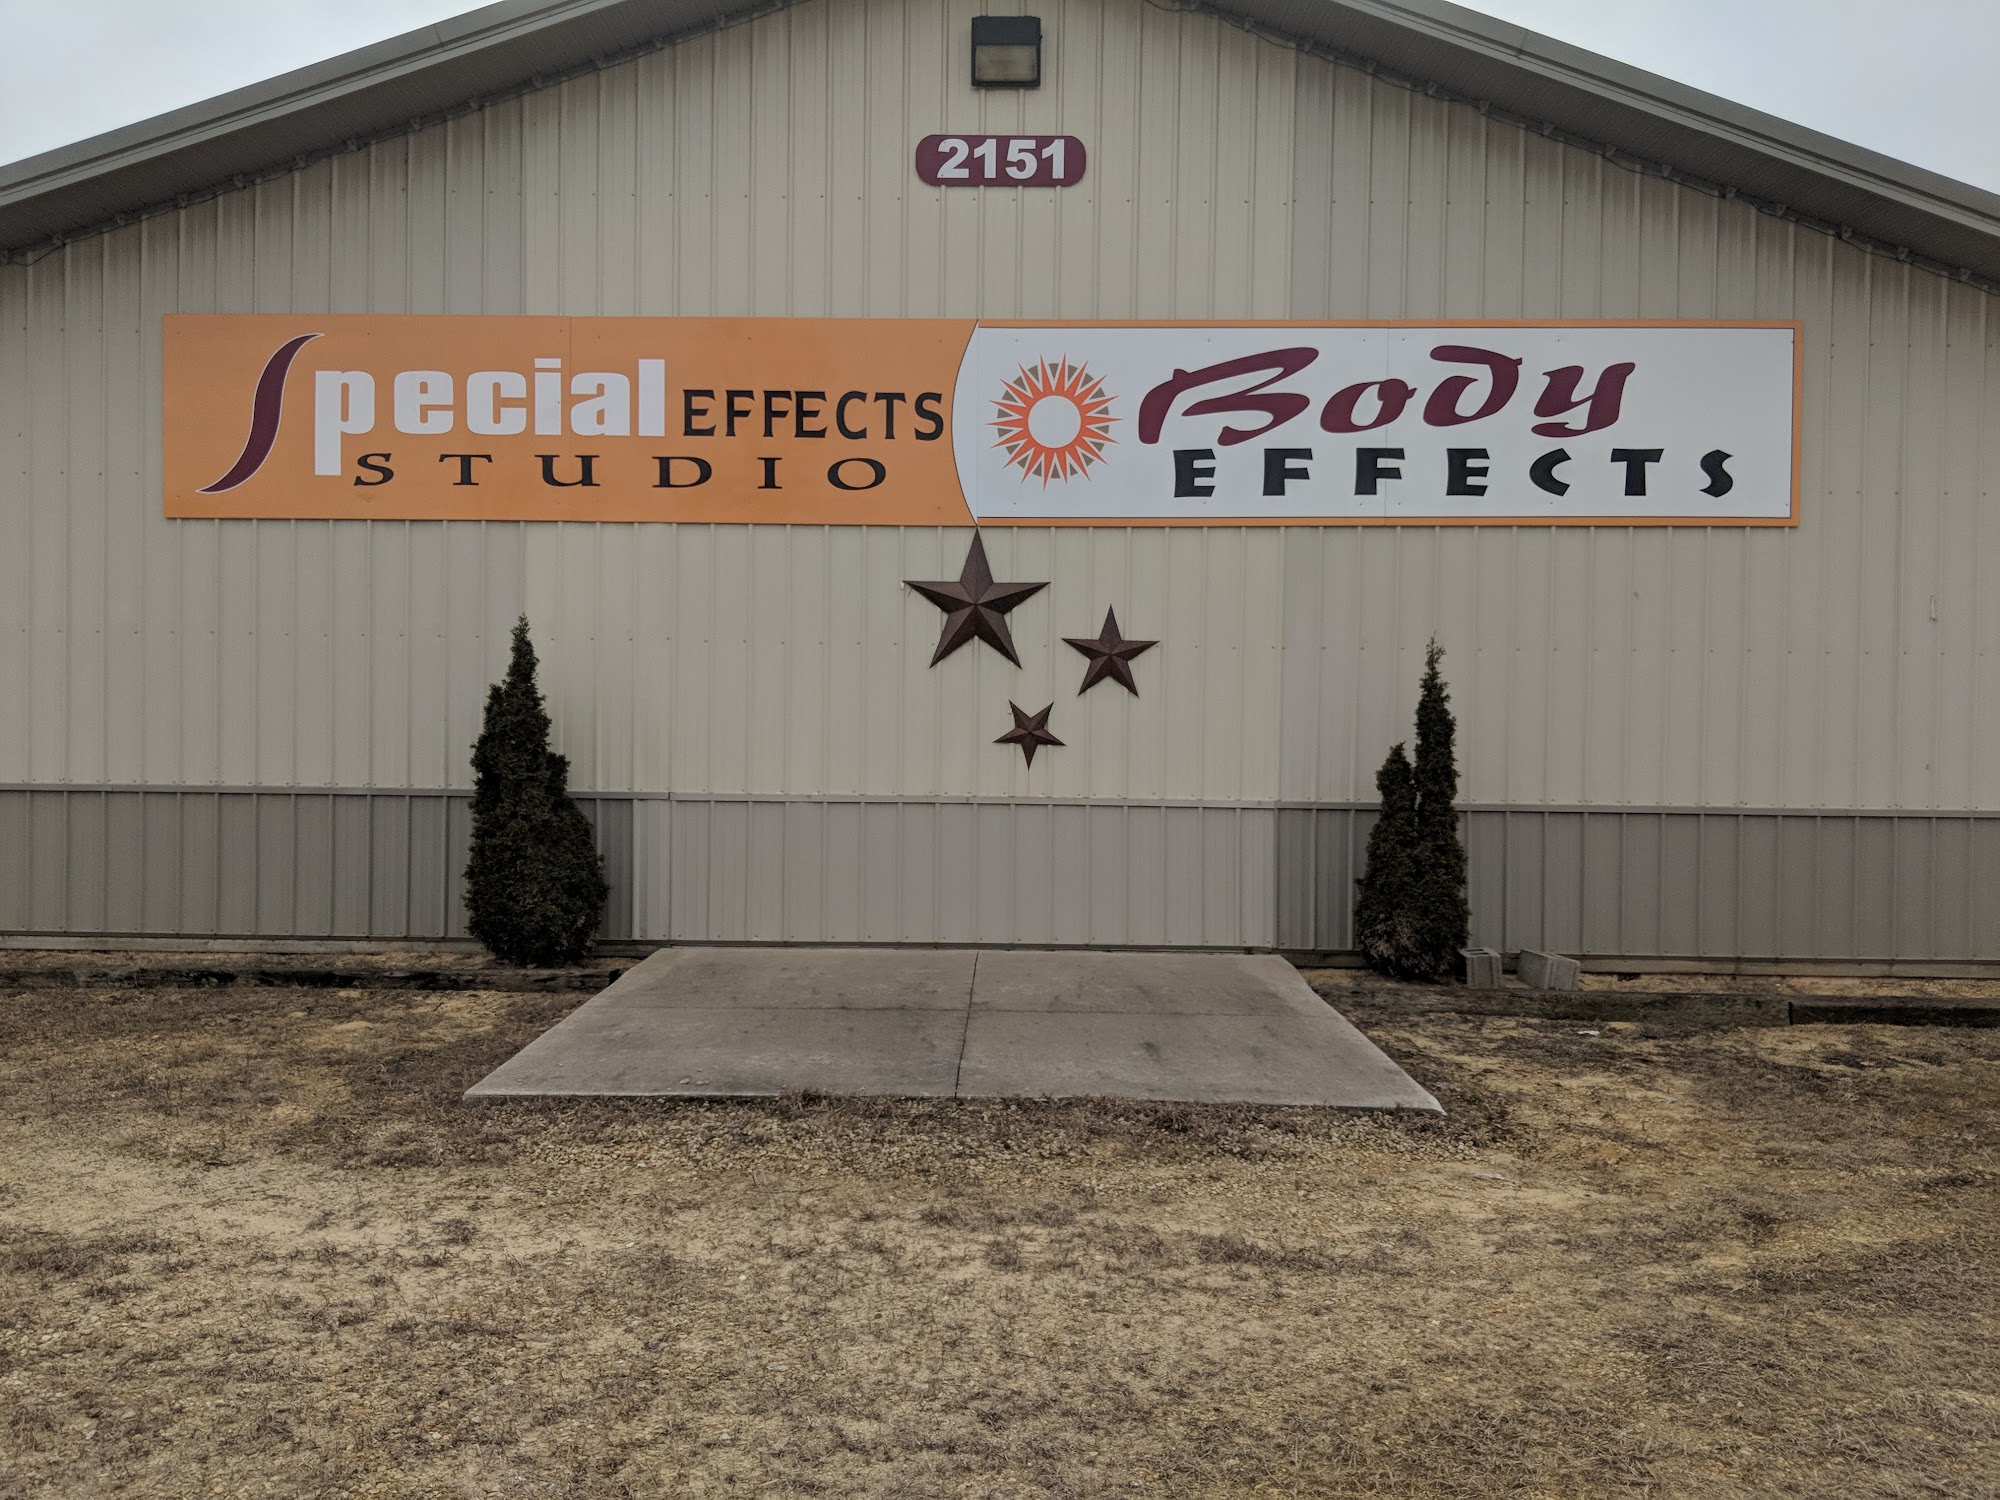 Special Effects Studio 2151 W Wisconsin St, Sparta Wisconsin 54656